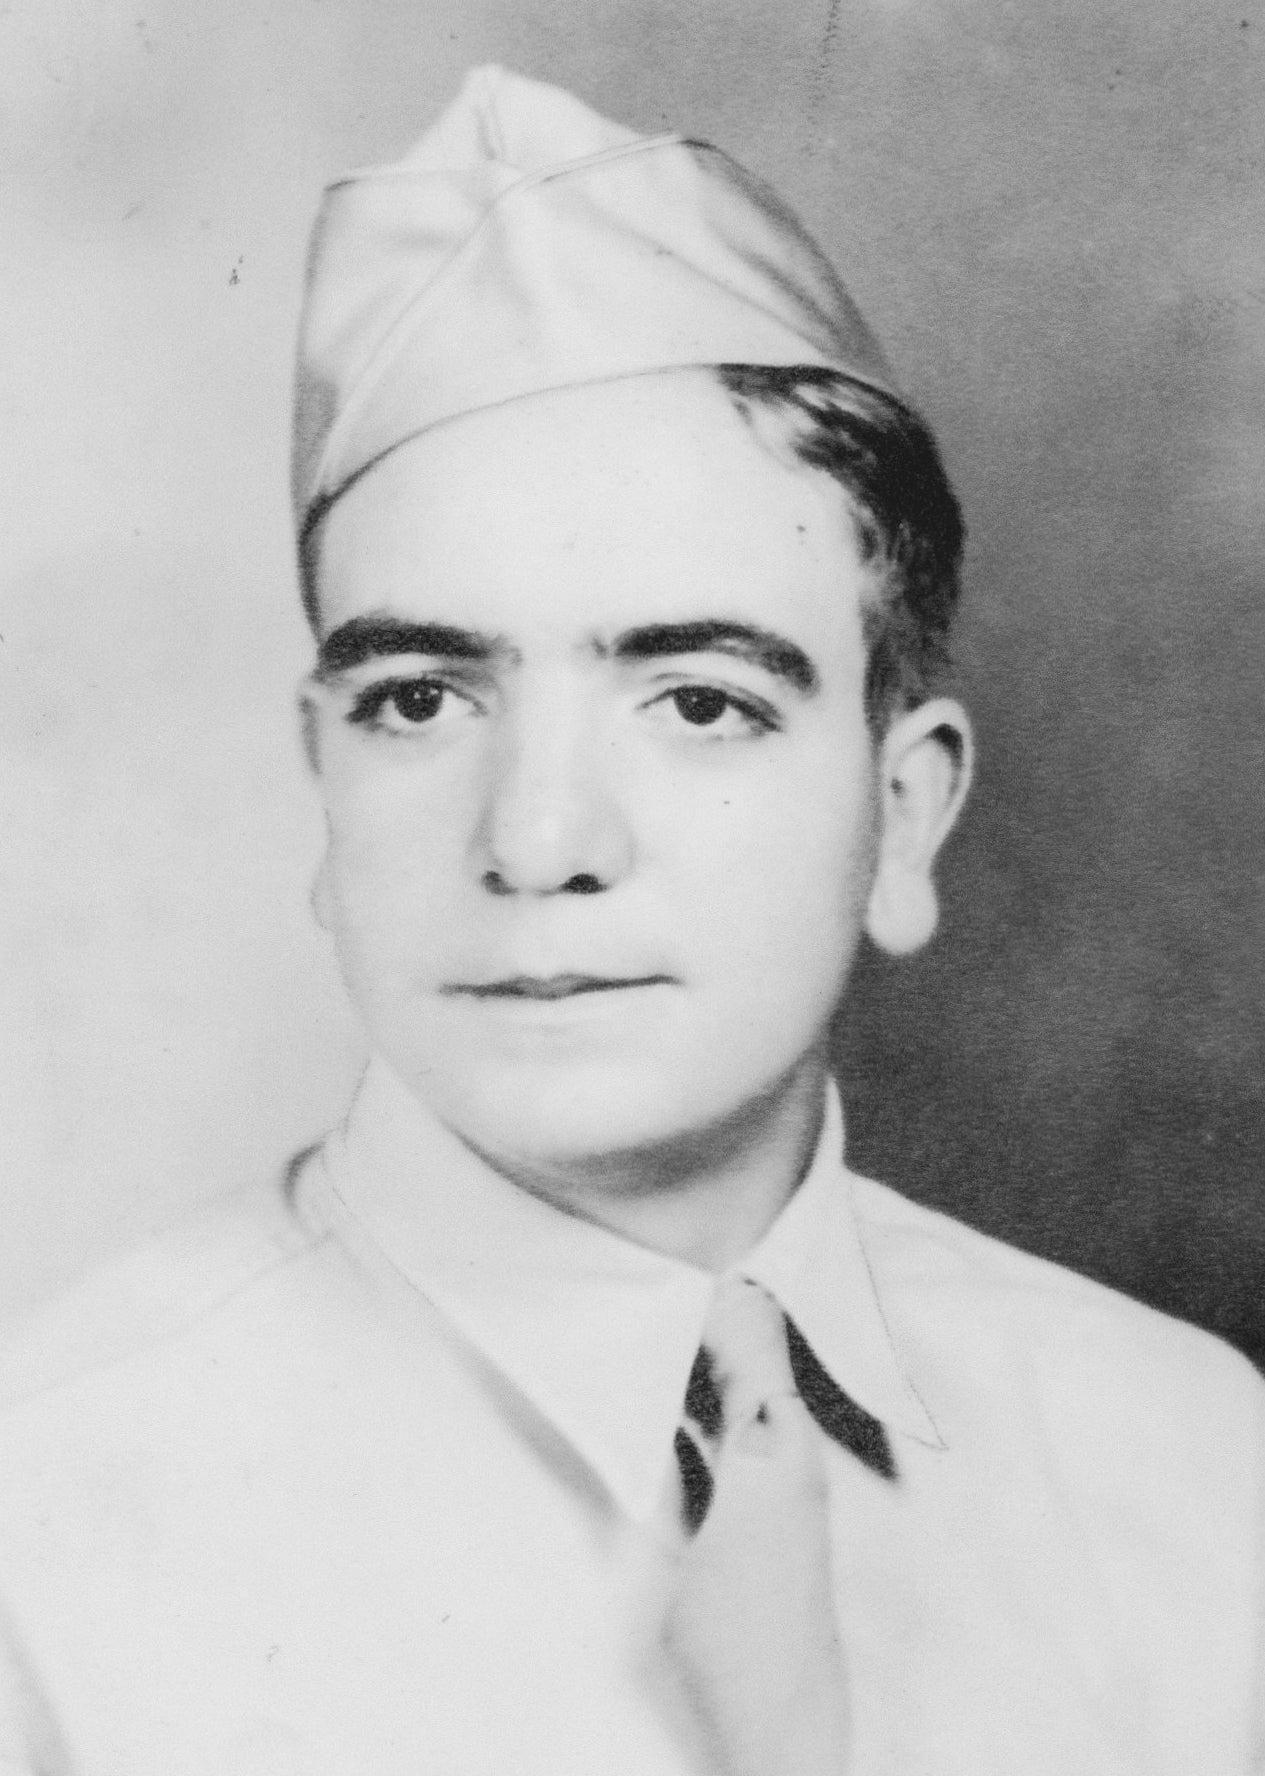 Private George A. Turano Jr